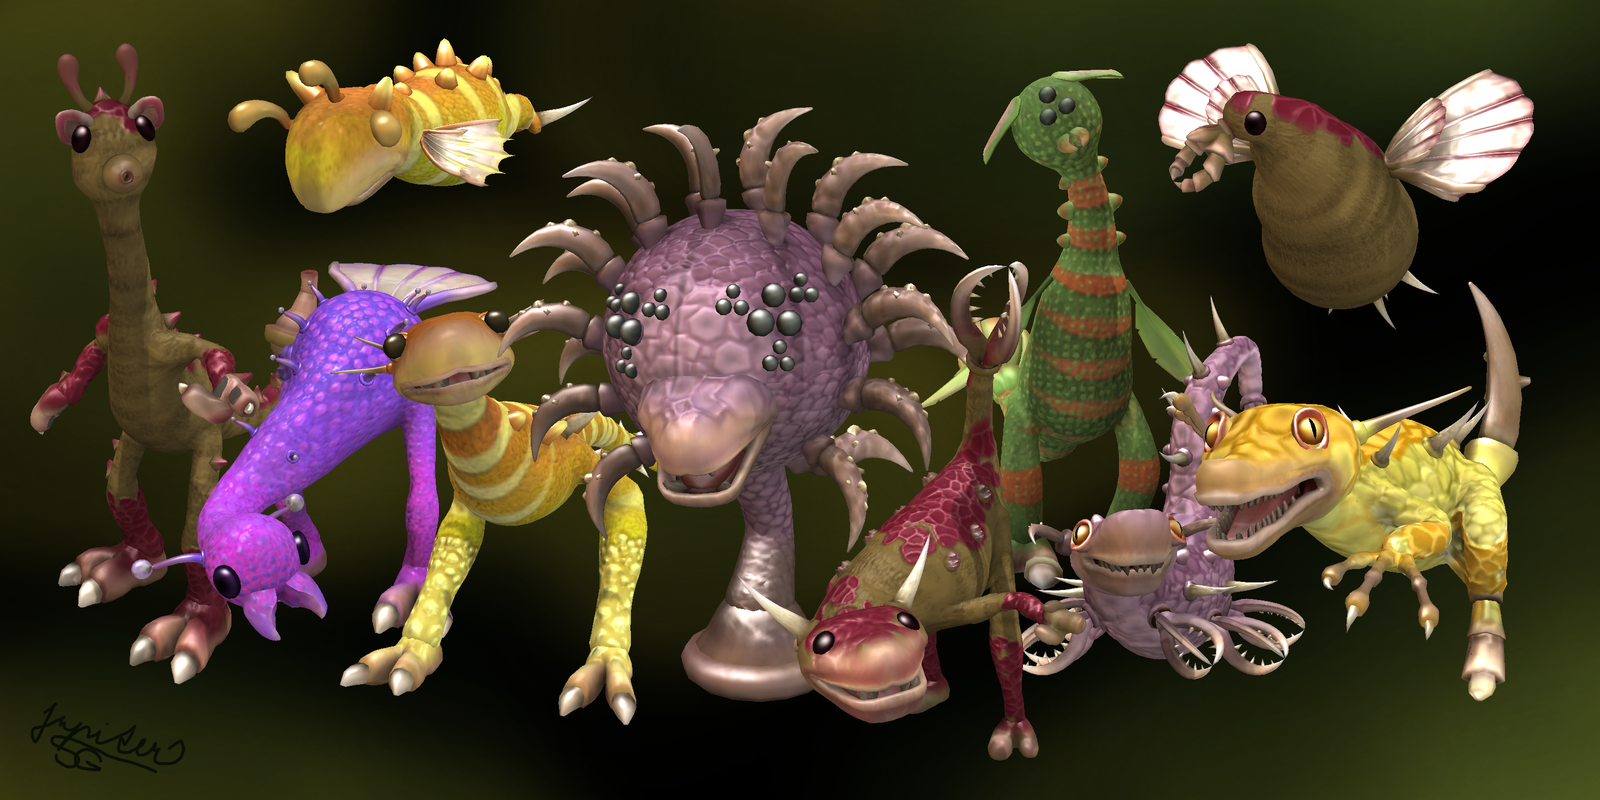 Спор вики. Существа Максис Spore. Лягухозавр Spore. Spore существа монстры. Spore Maxis creatures.